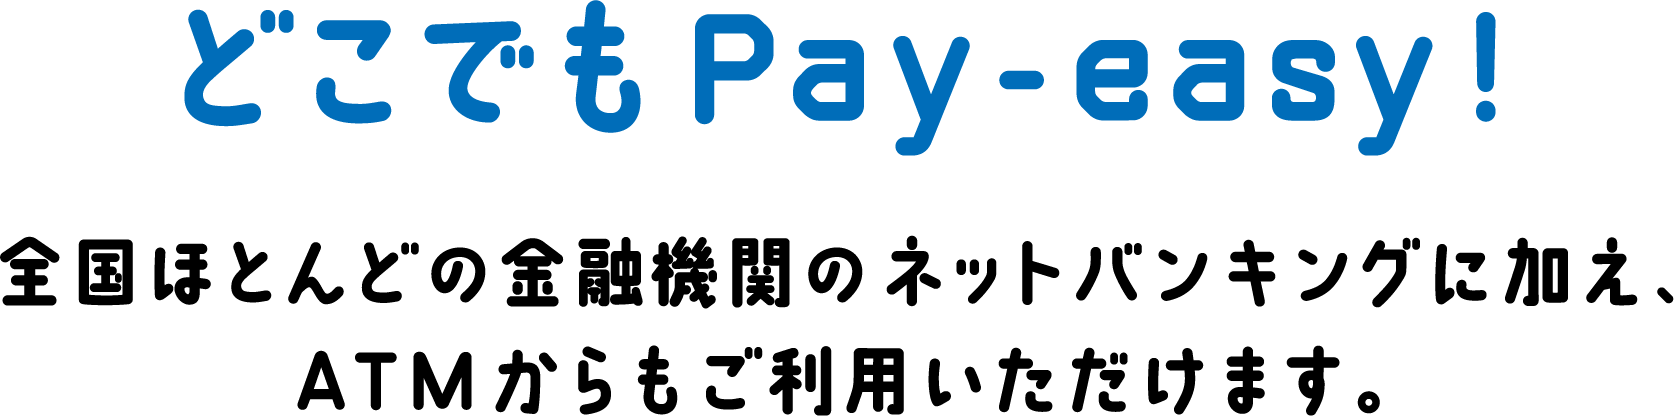 どこでもPay-easy! 全国ほとんどの金融機関のネットバンキングに加え、ATMからもご利用いただけます。